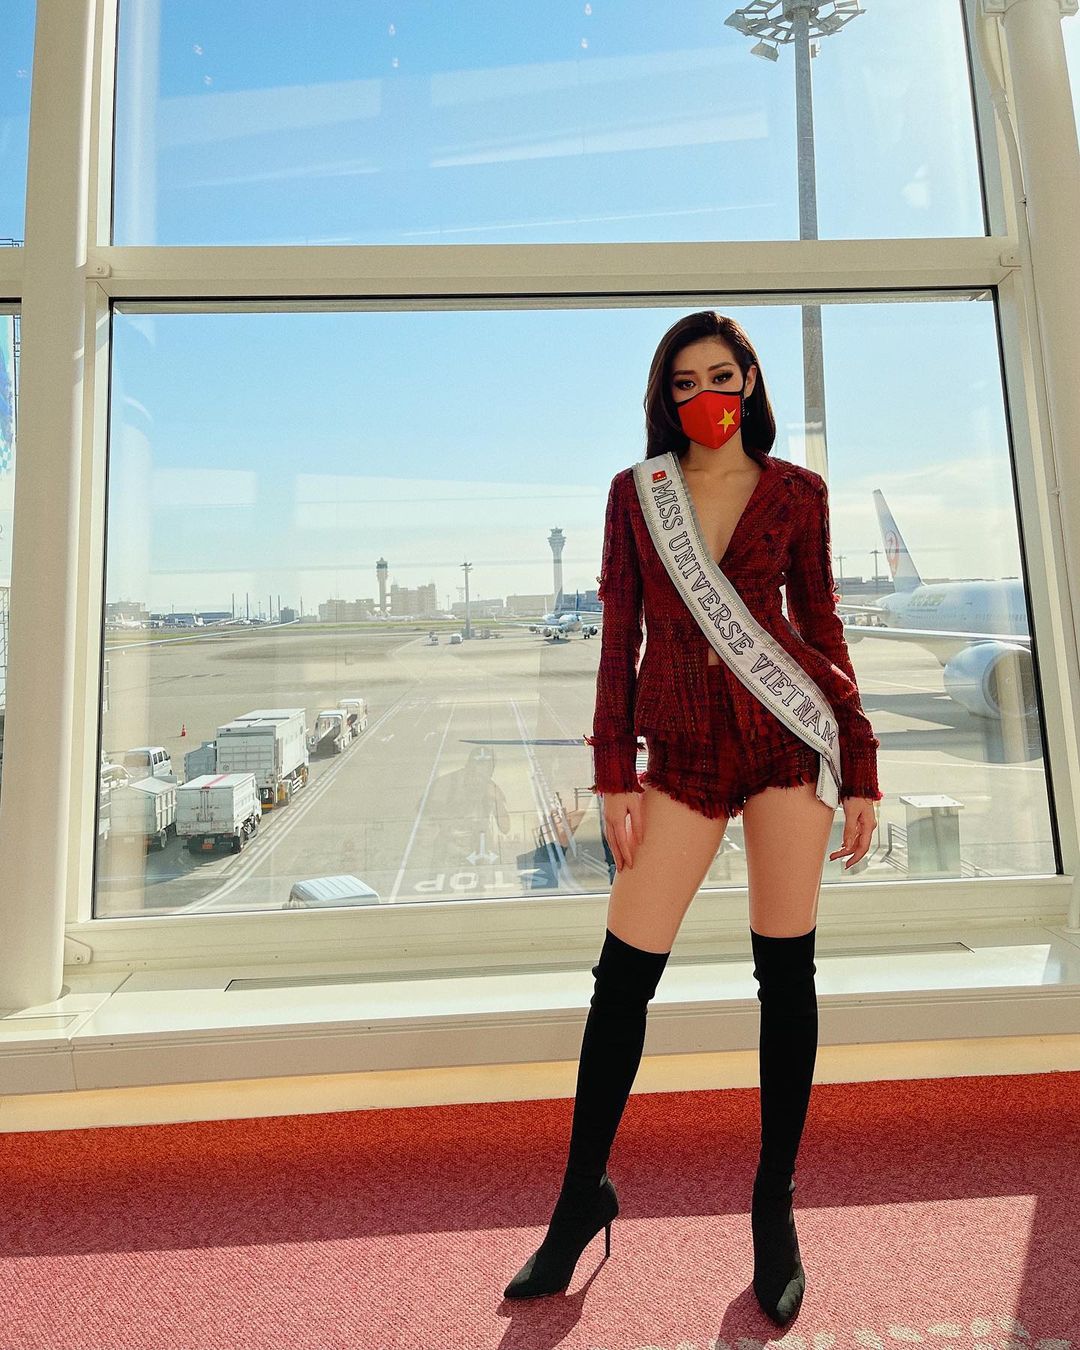 Sang Mỹ mới 3 ngày, Khánh Vân được dự đoán đăng quang Miss Universe - Ảnh 6